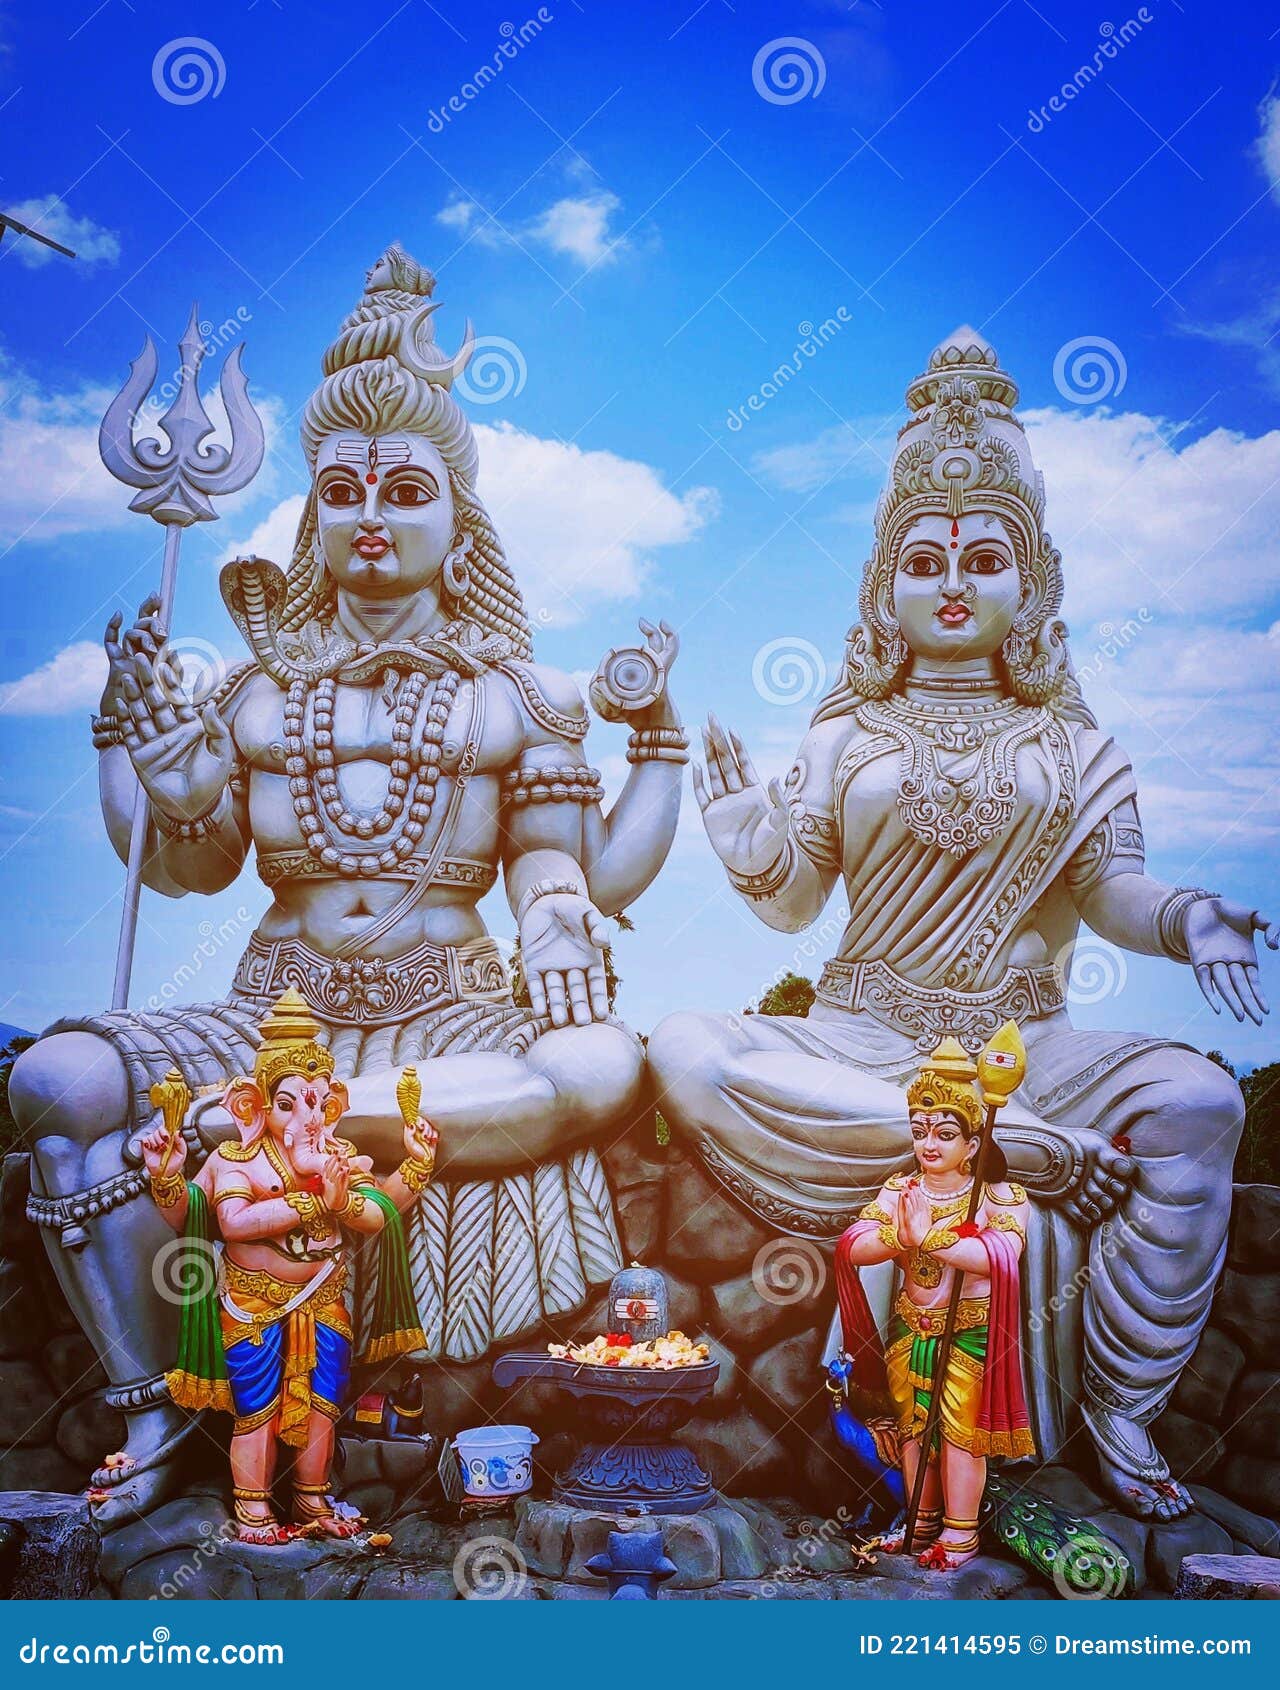 Lord Shiva and Parvathi Image  Lord ganesha paintings Lord shiva pics Shiva  parvati images